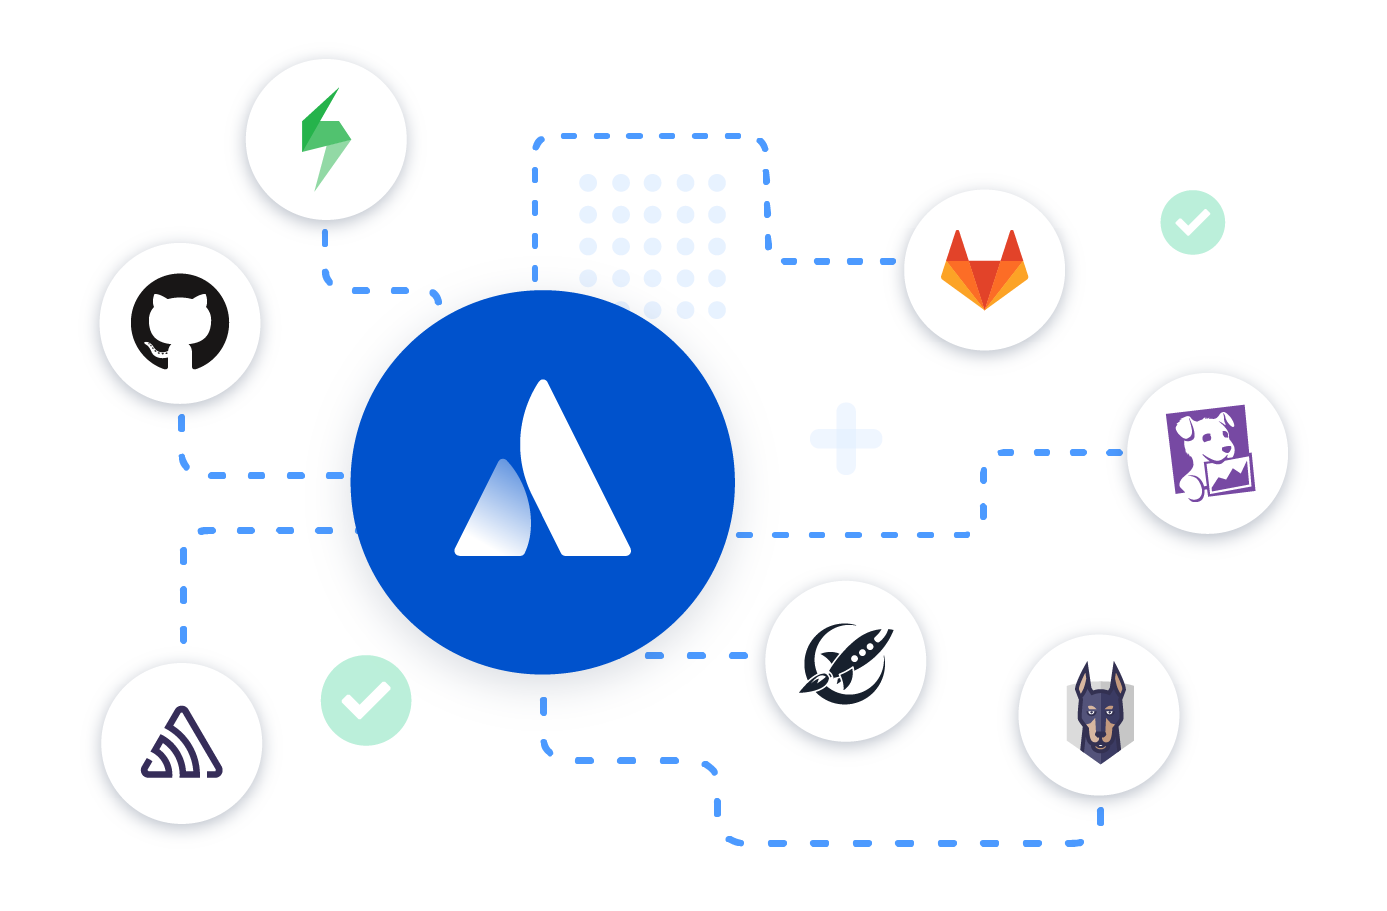 Integracje Atlassian DevOps